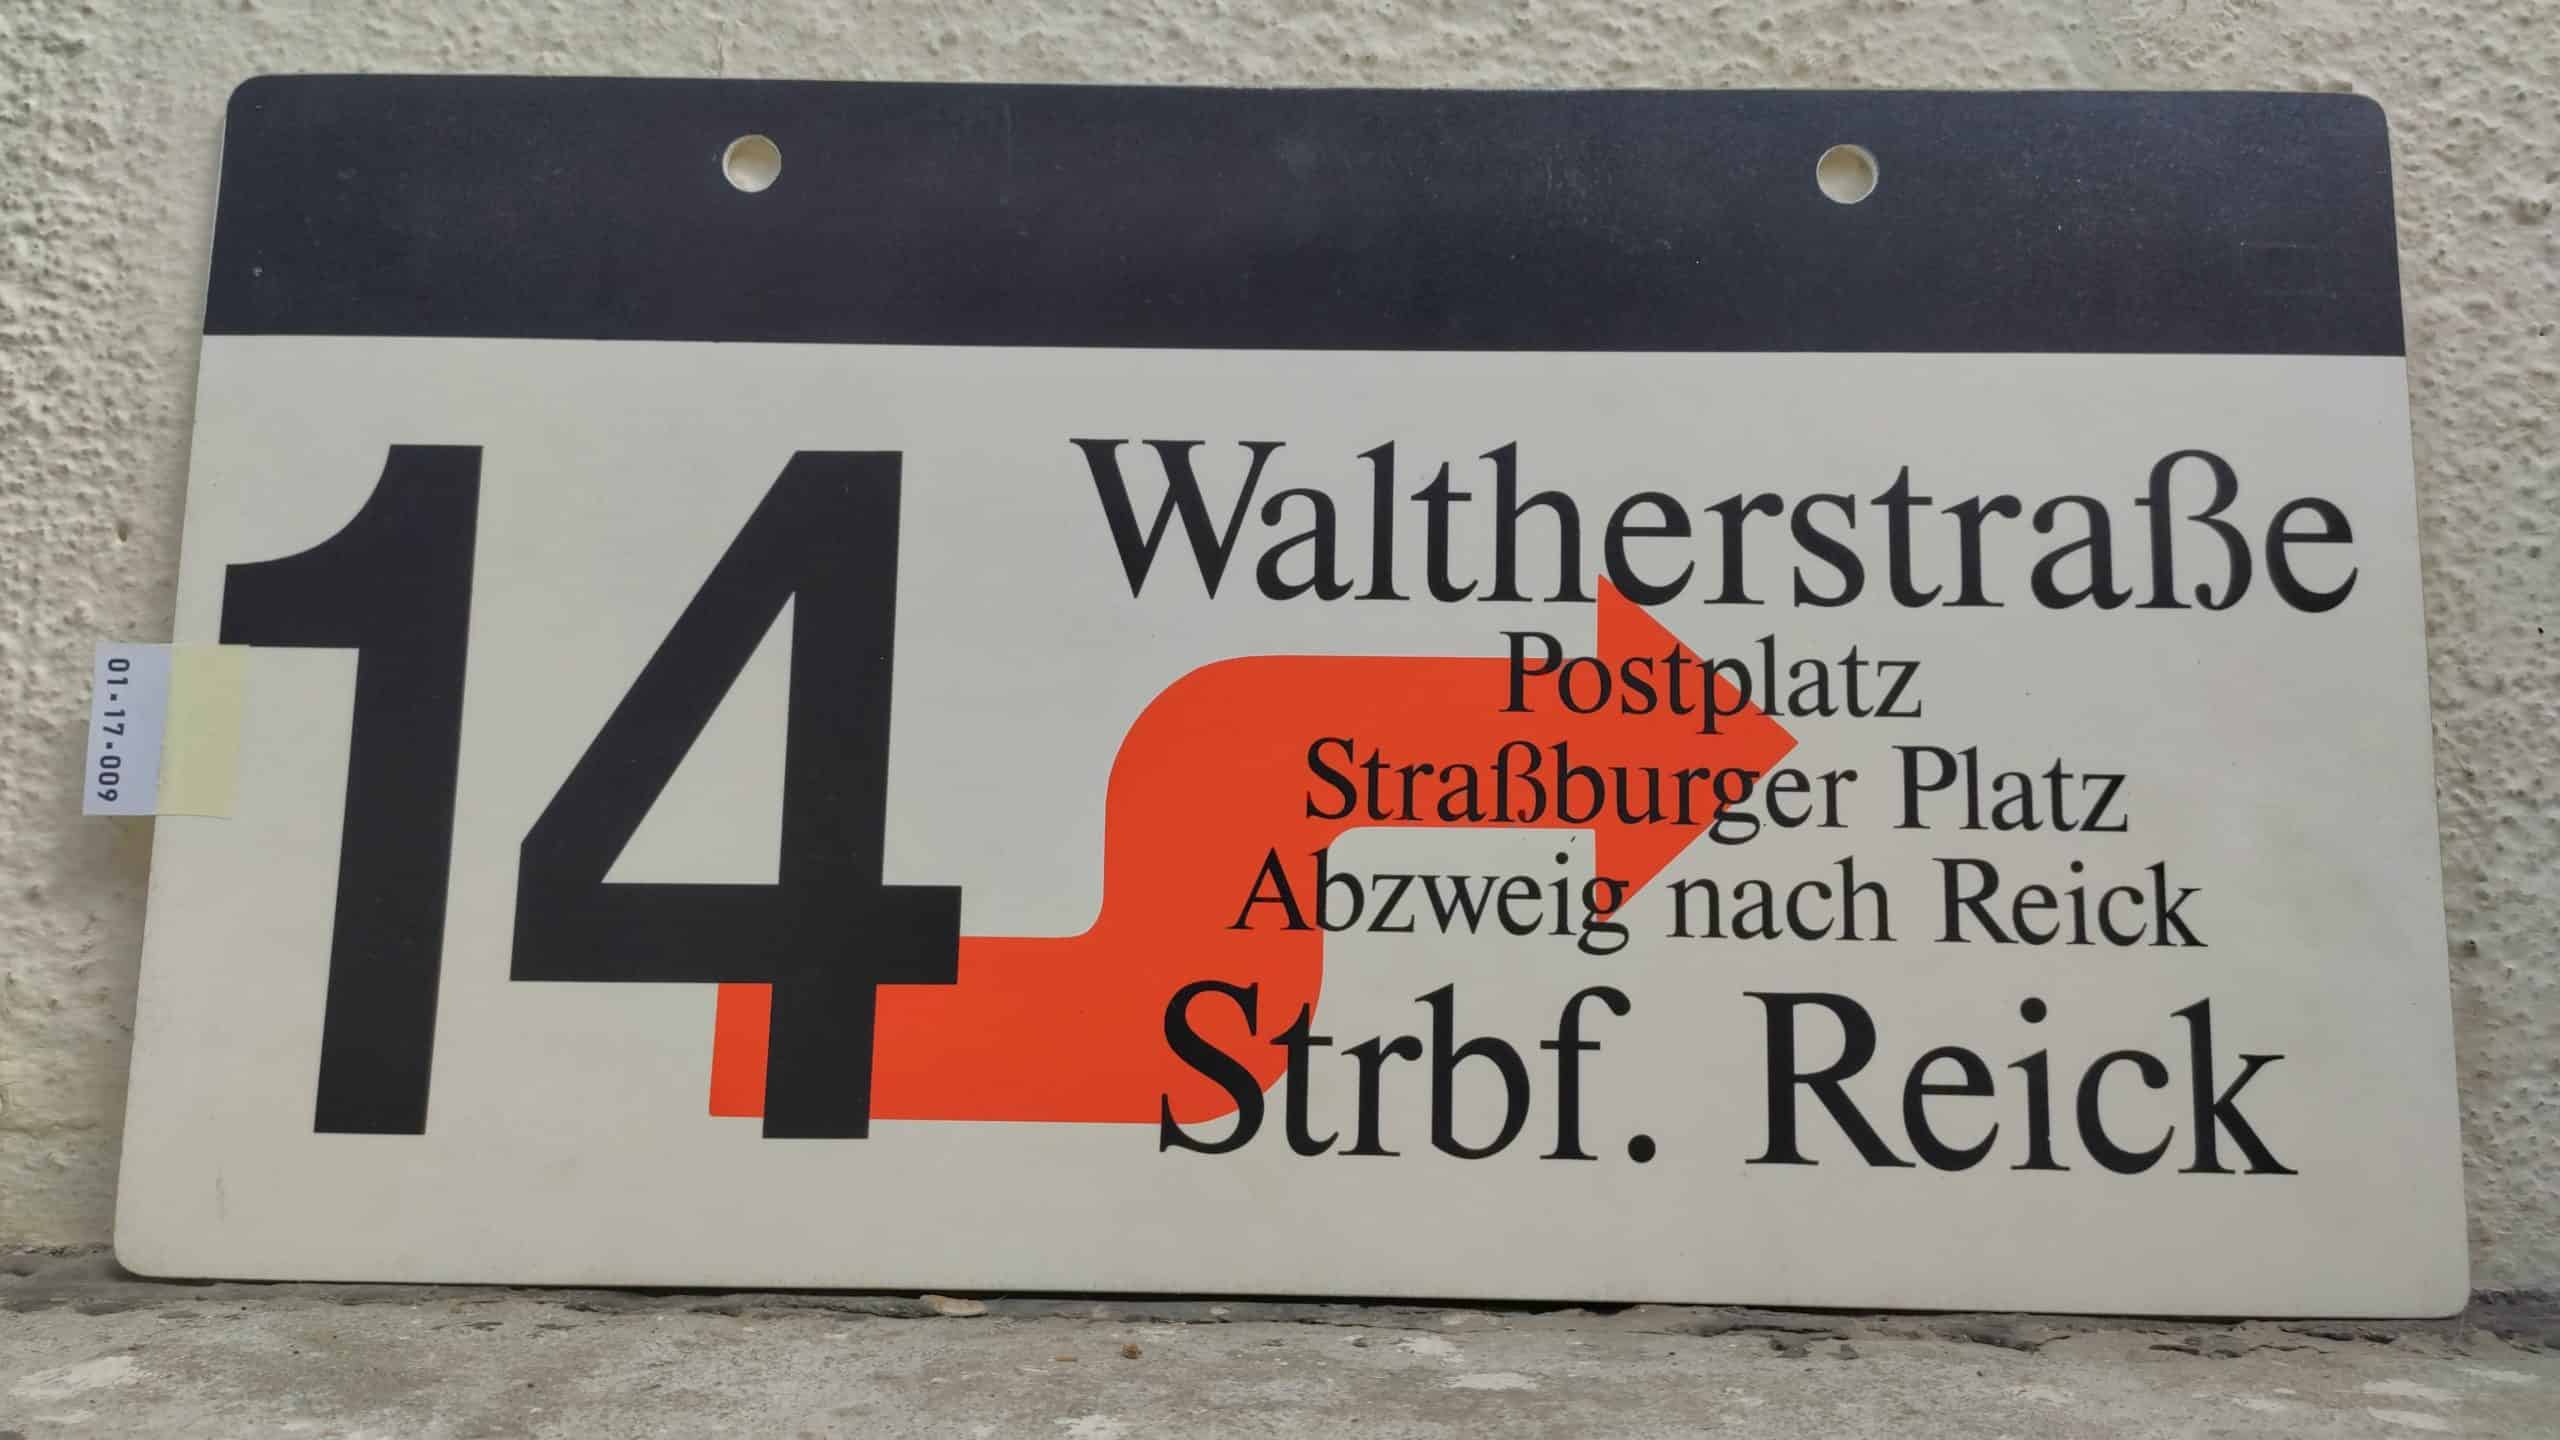 14 Waltherstraße – Strbf. Reick #1